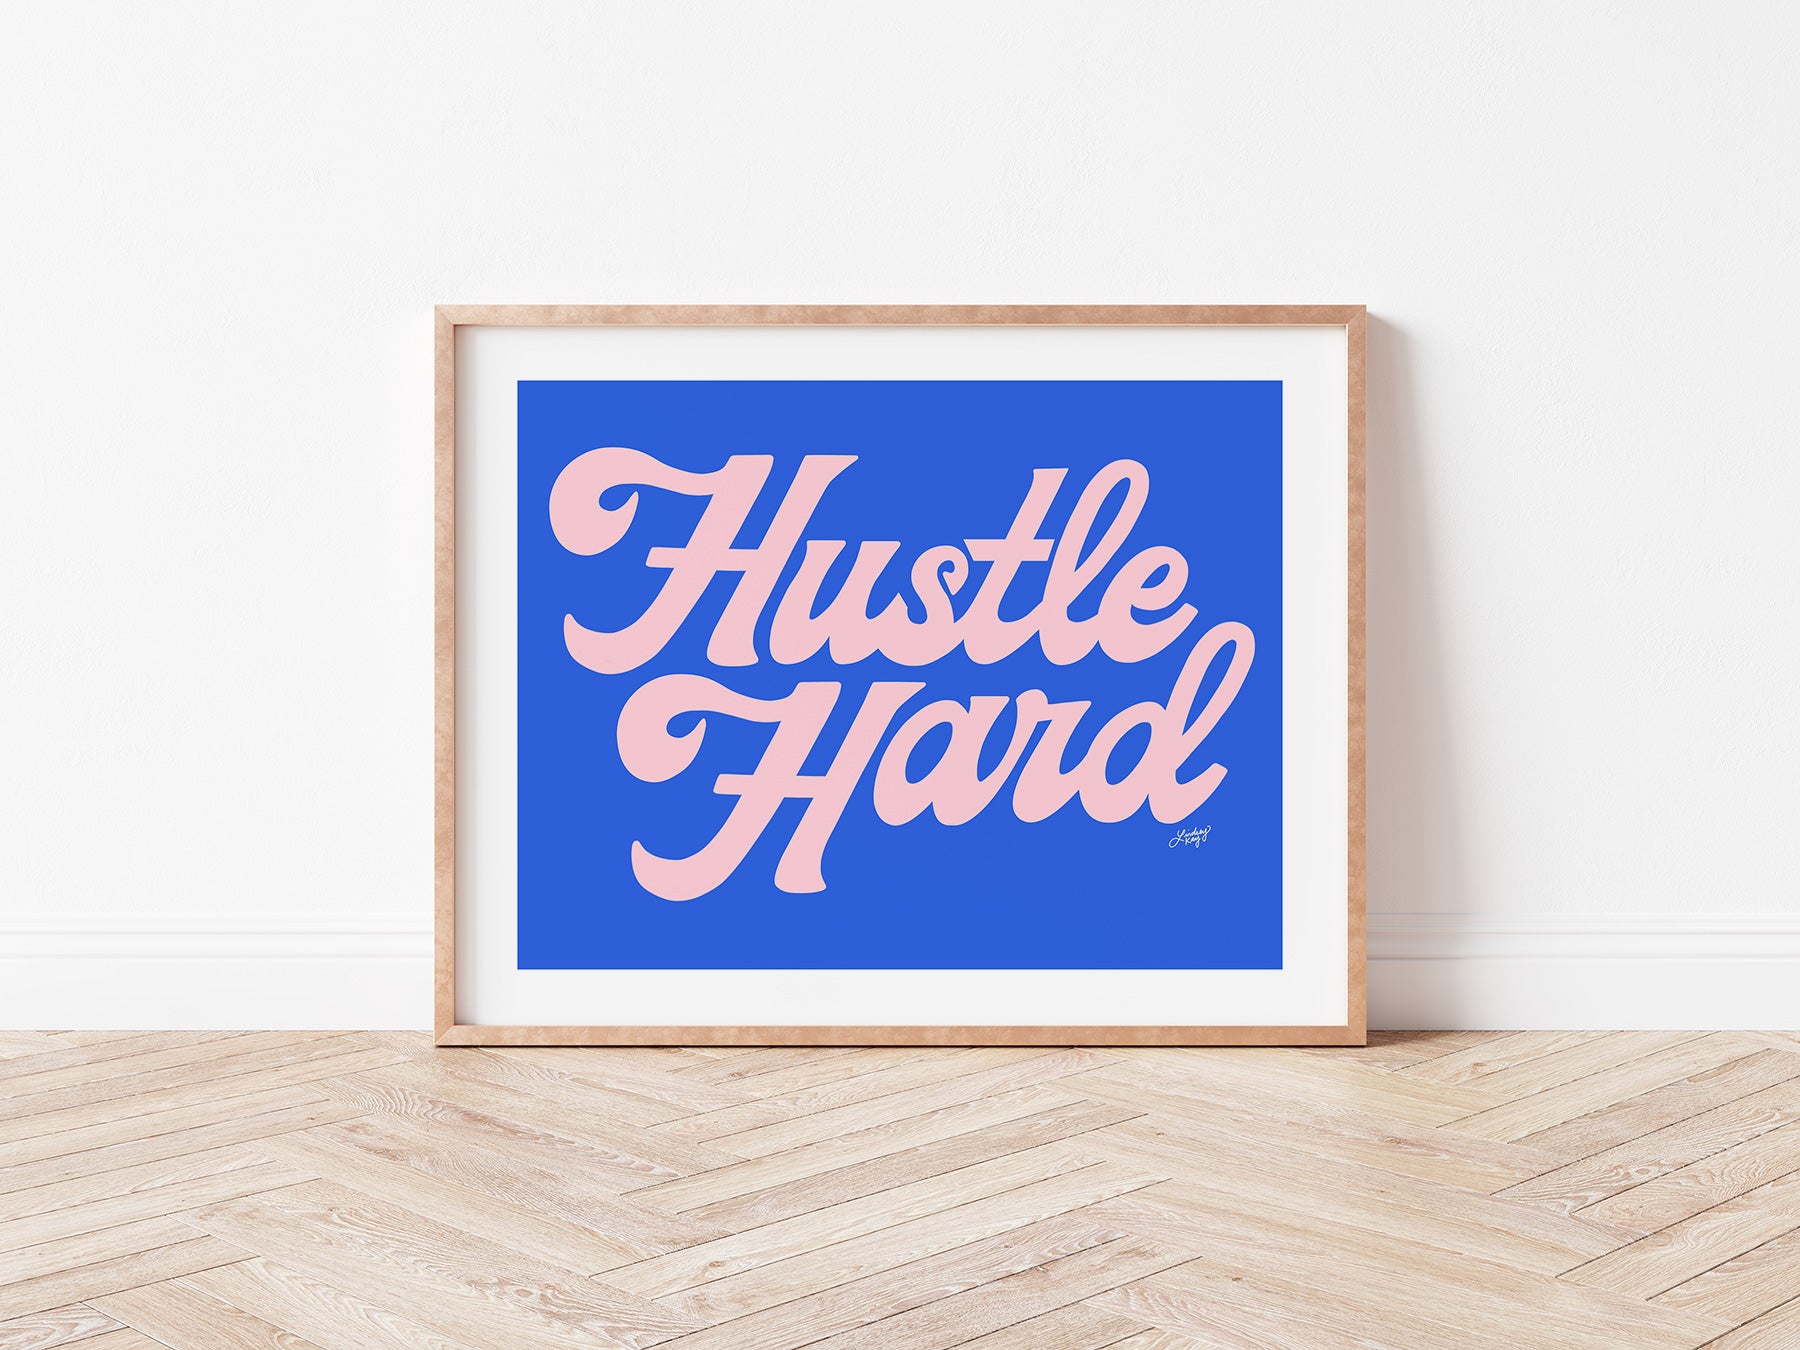 Hustle Hard (Rosa/Azul) - Impresión de arte